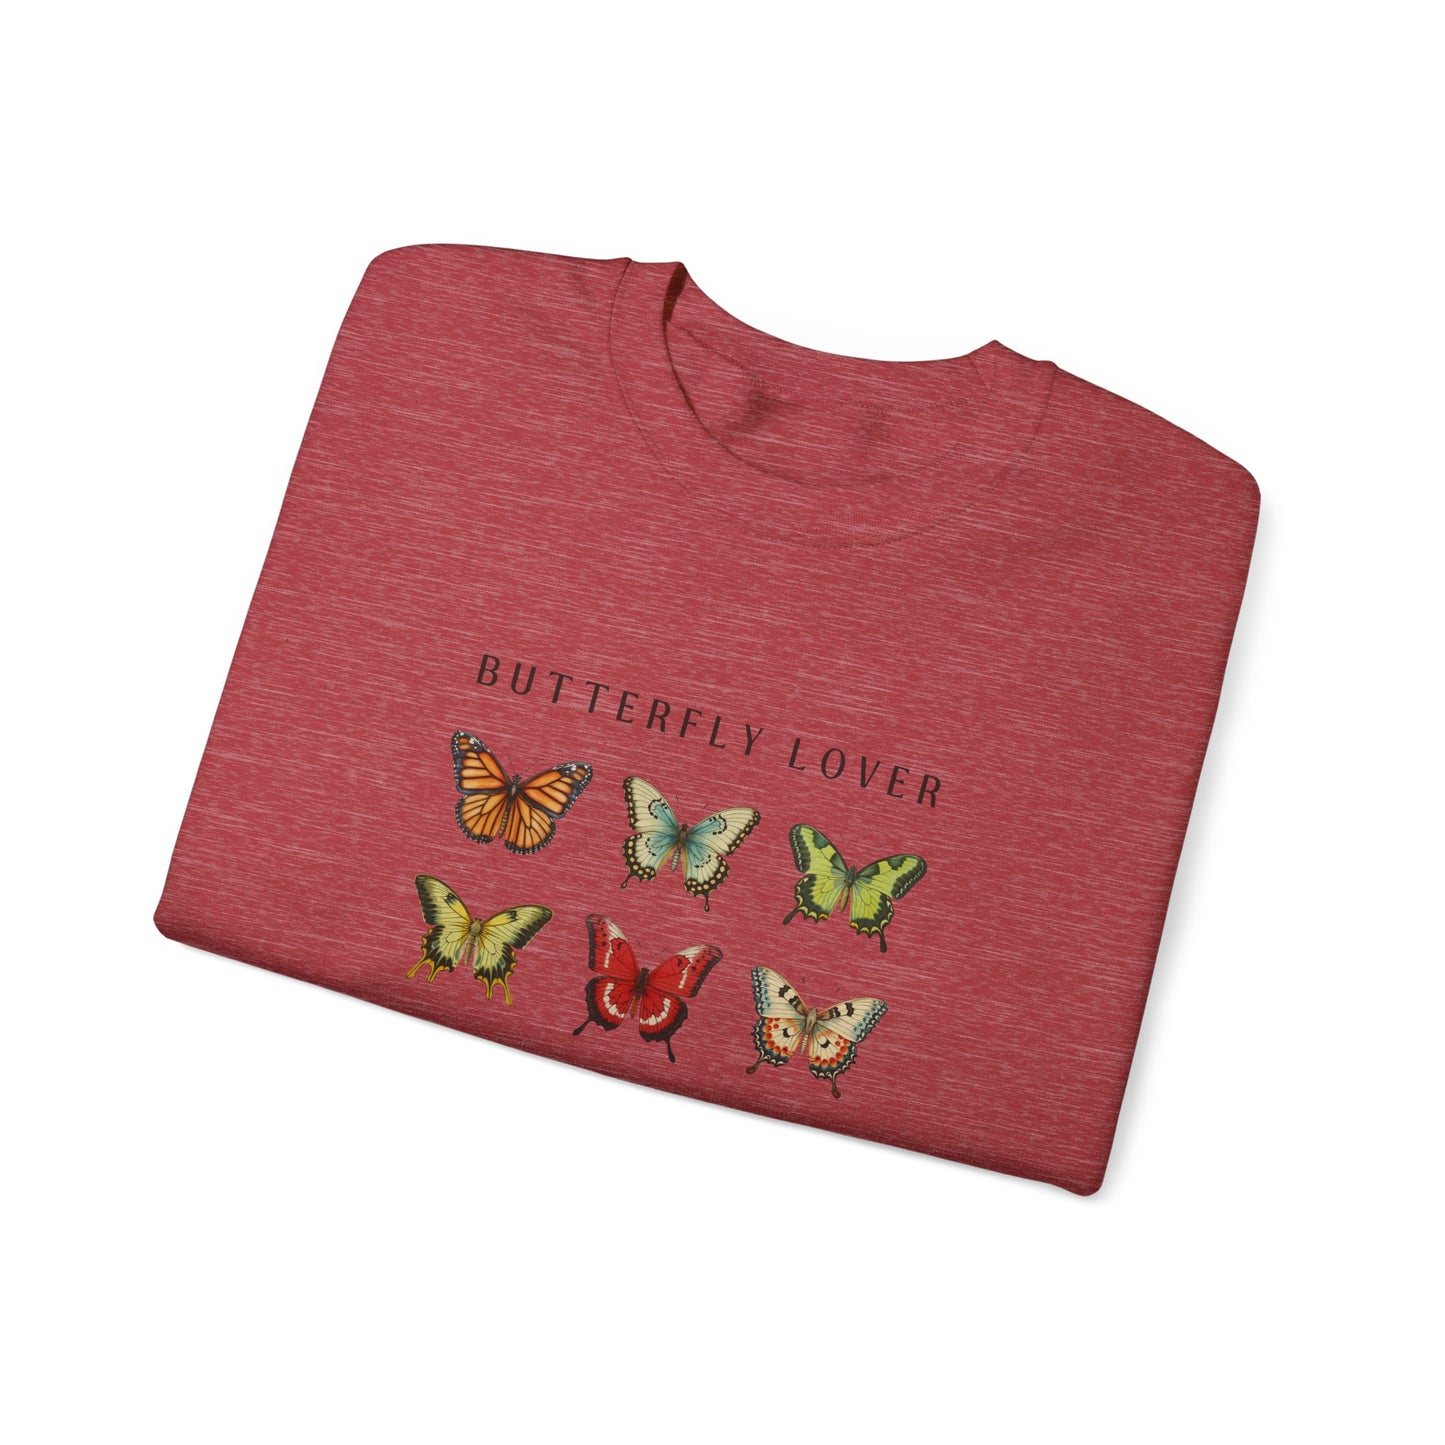 Unisex Heavy Blend™ Crewneck Graphic design (Butterfly Lover) Sweatshirt